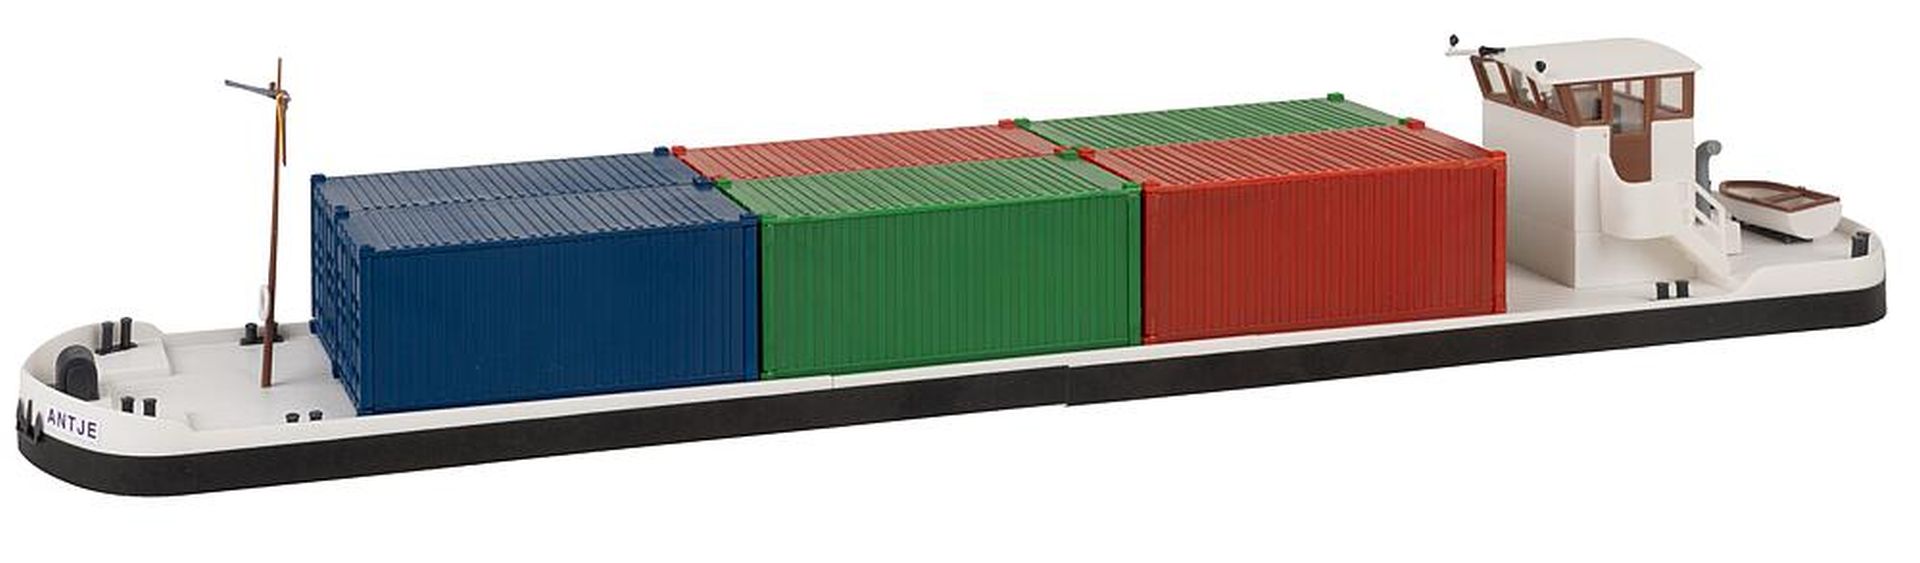 Faller 131013 - Flussfrachter mit Containern